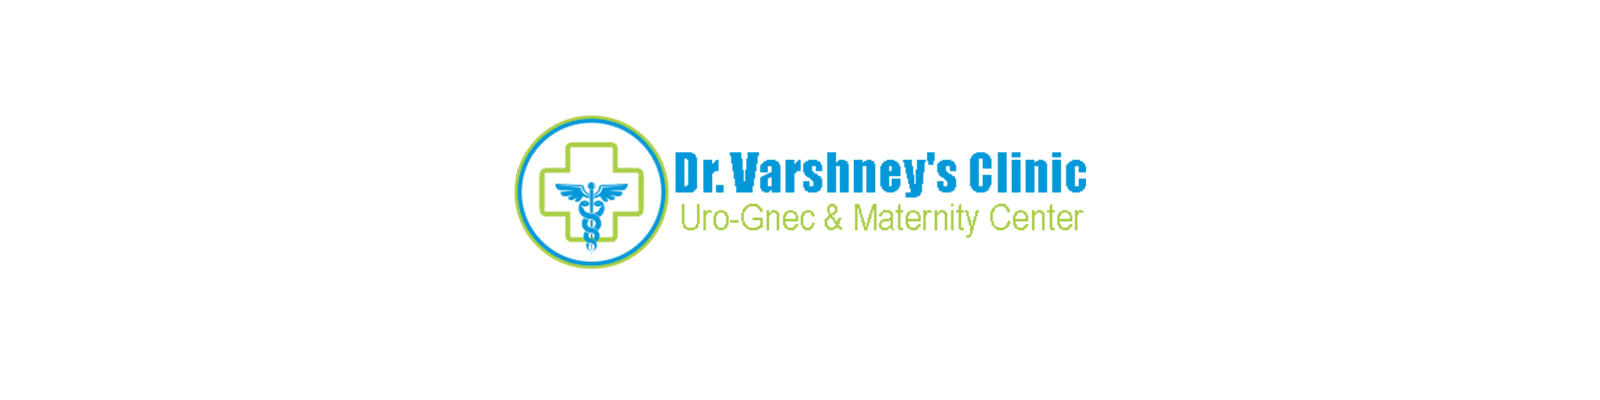 Dr. Varshney's Clinic